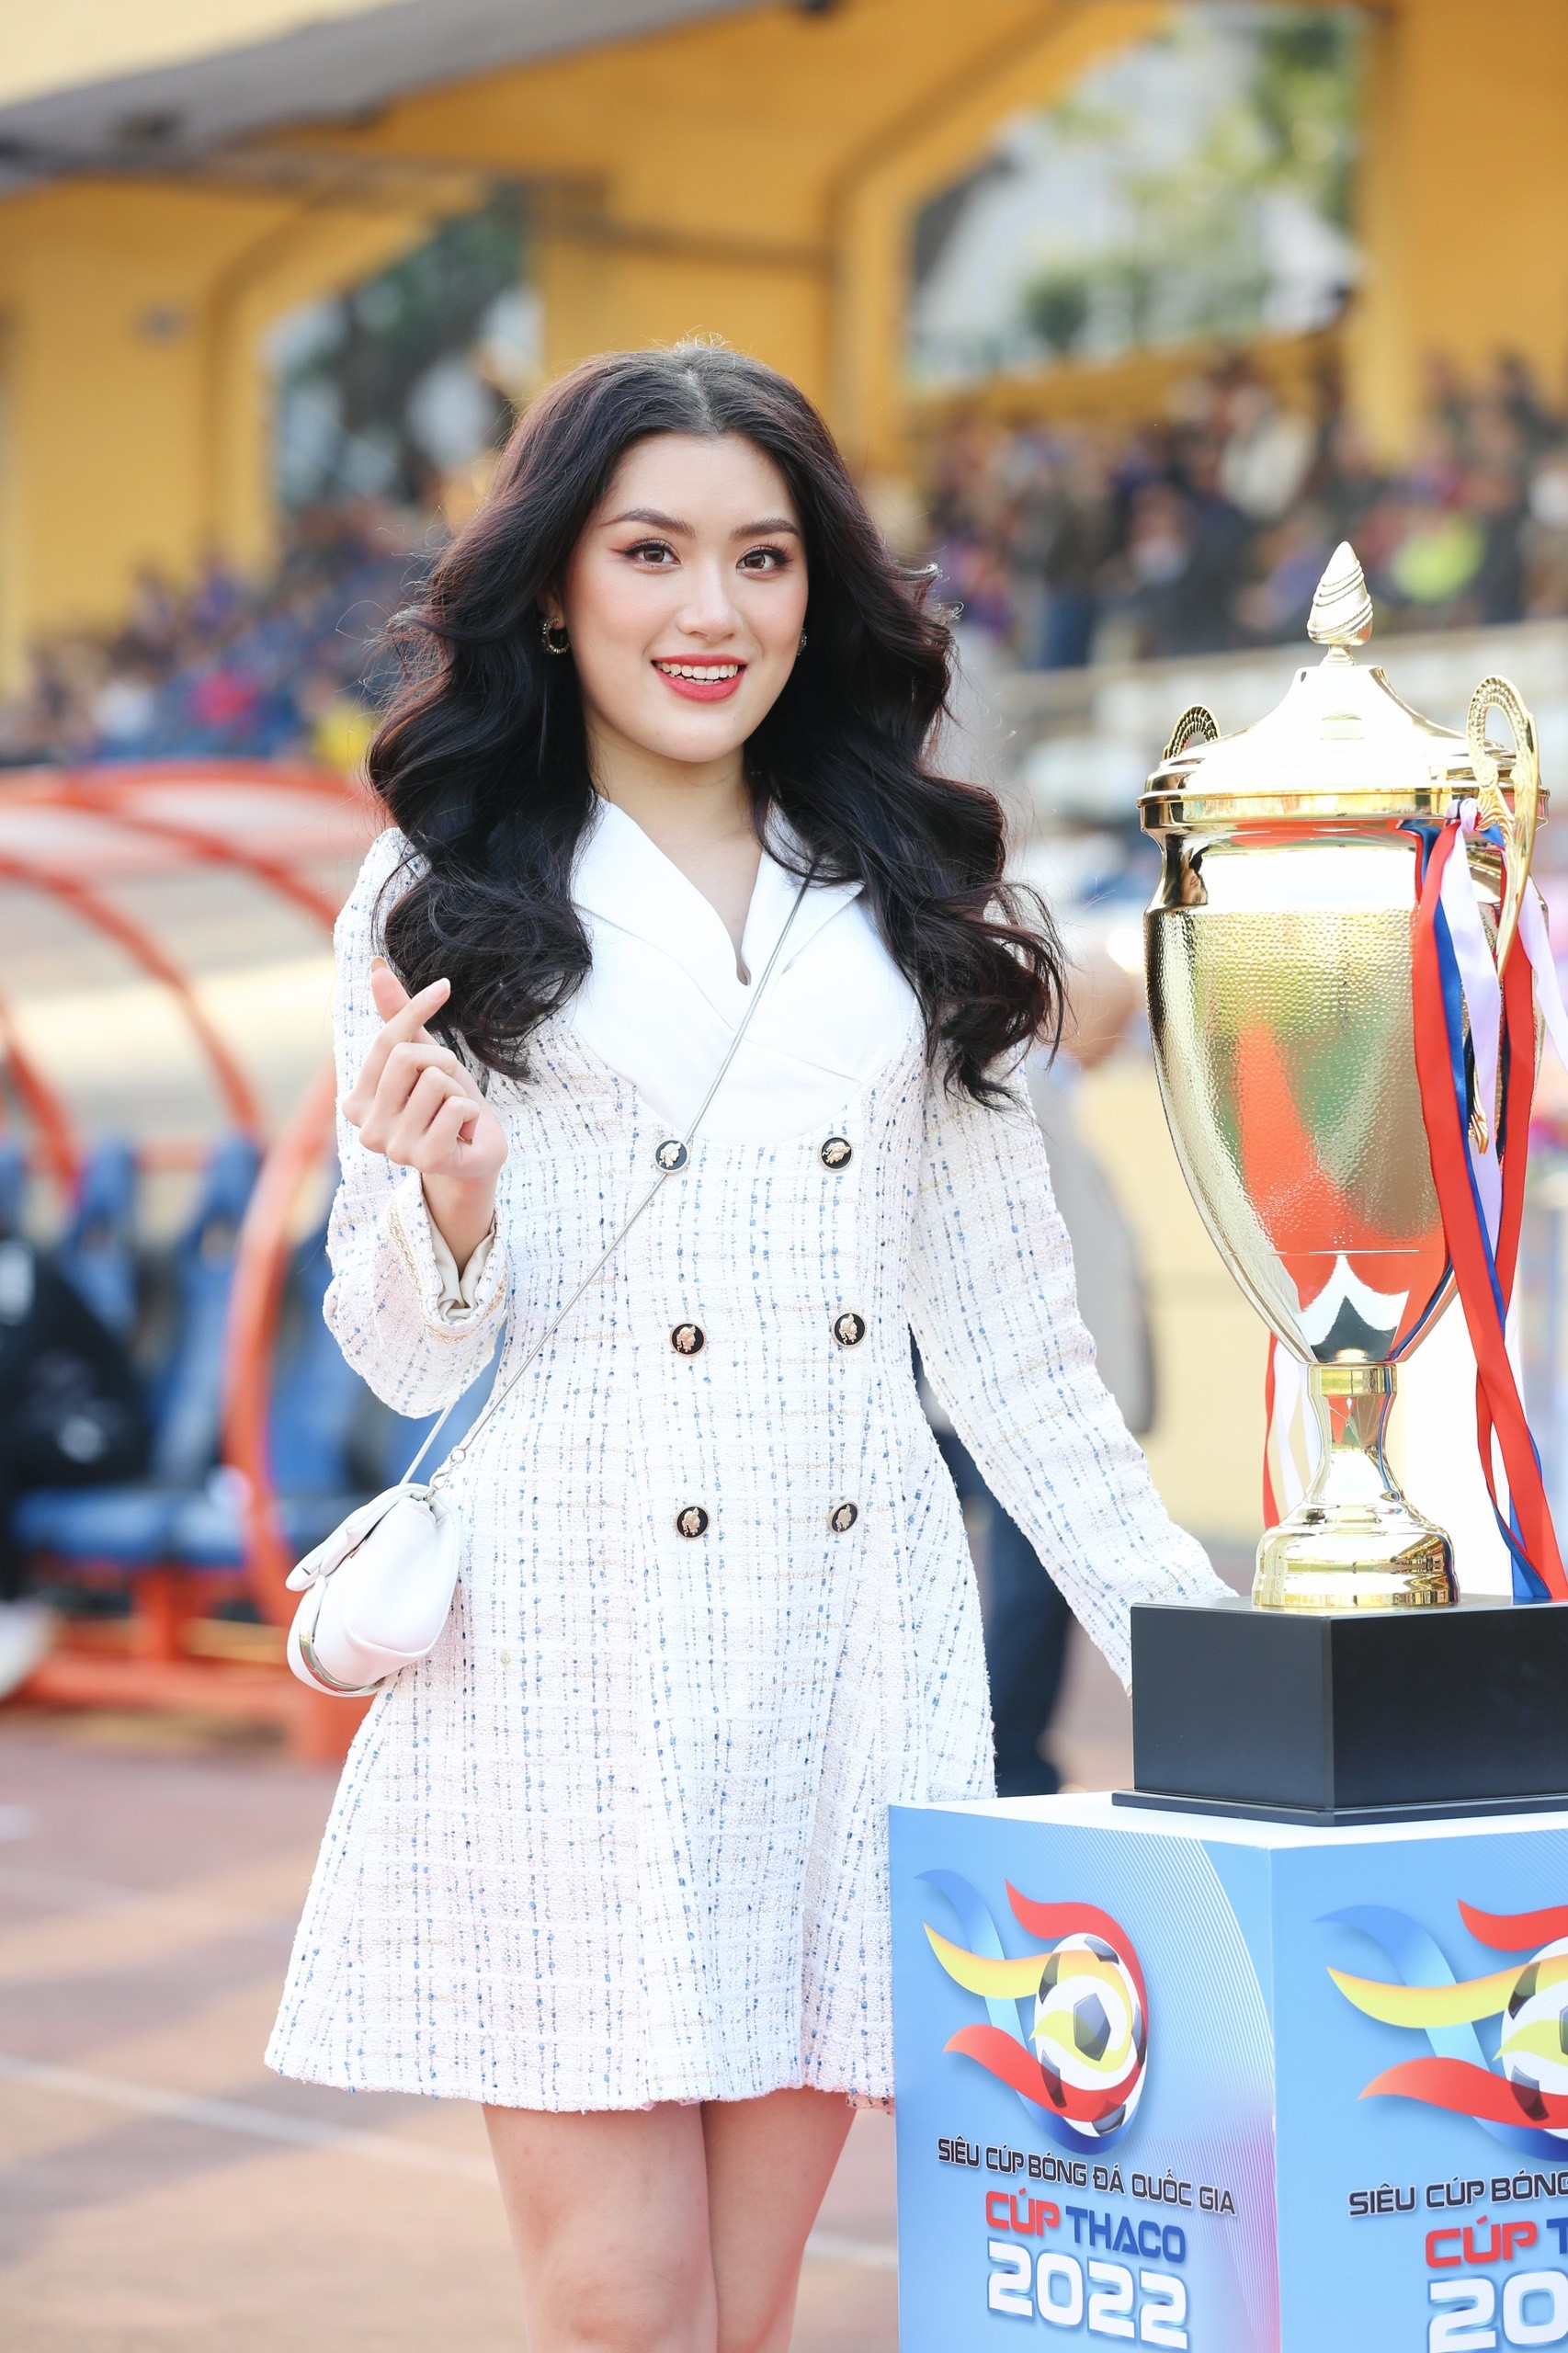 Hoa hậu Đỗ Mỹ Linh đến sân Hàng Đẫy cổ vũ đội bóng của ông xã tranh Siêu cúp - Ảnh 18.